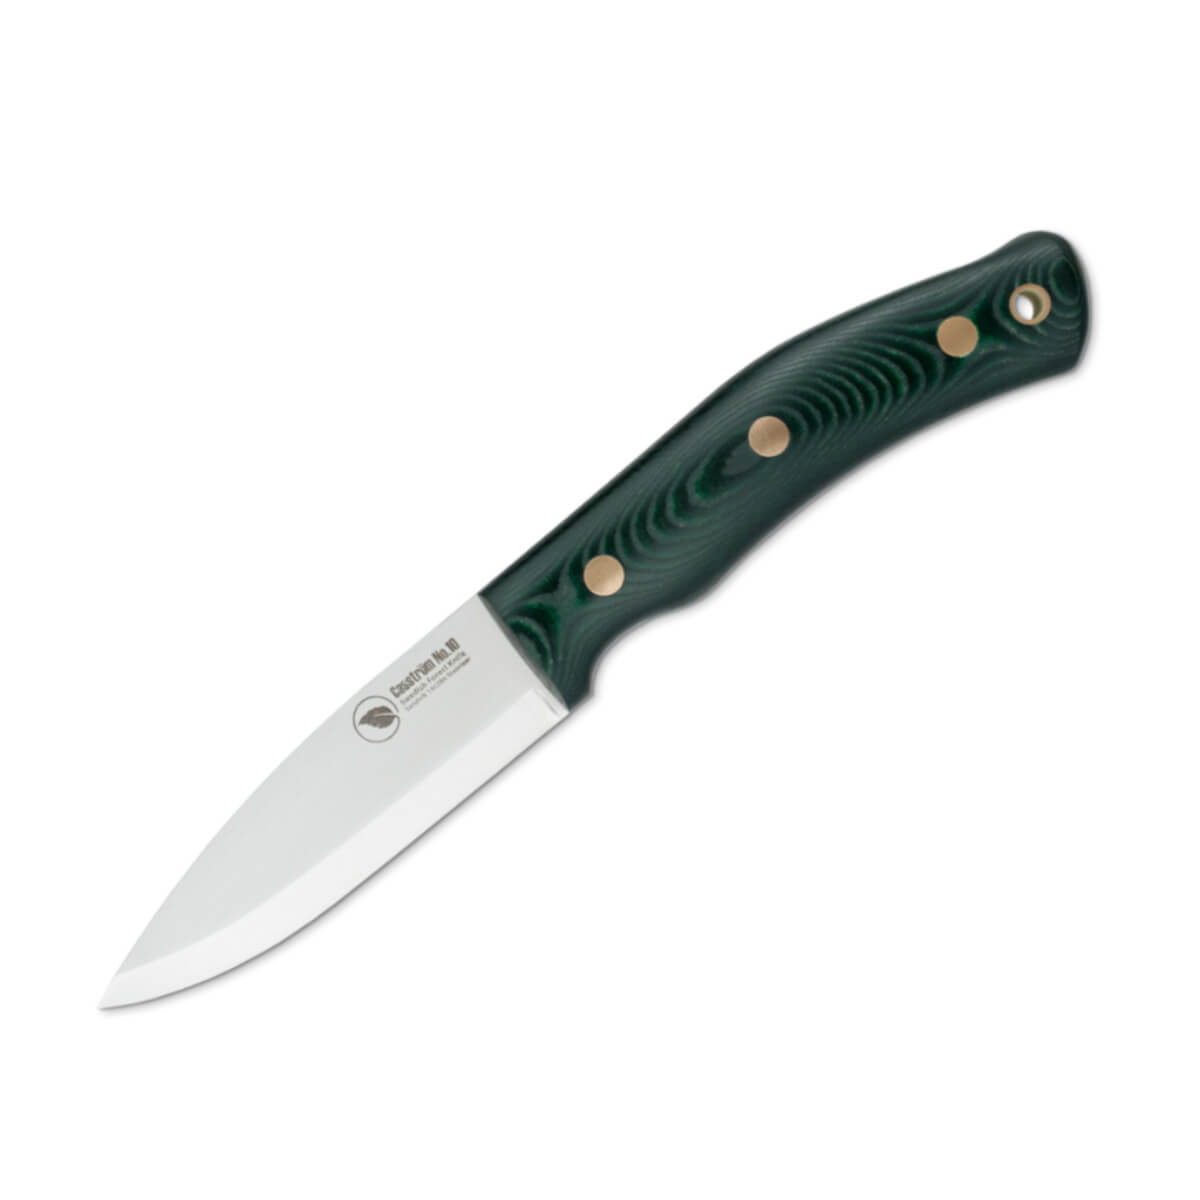 Casstrom No.10 Forest Knife - Green Linen Micarta